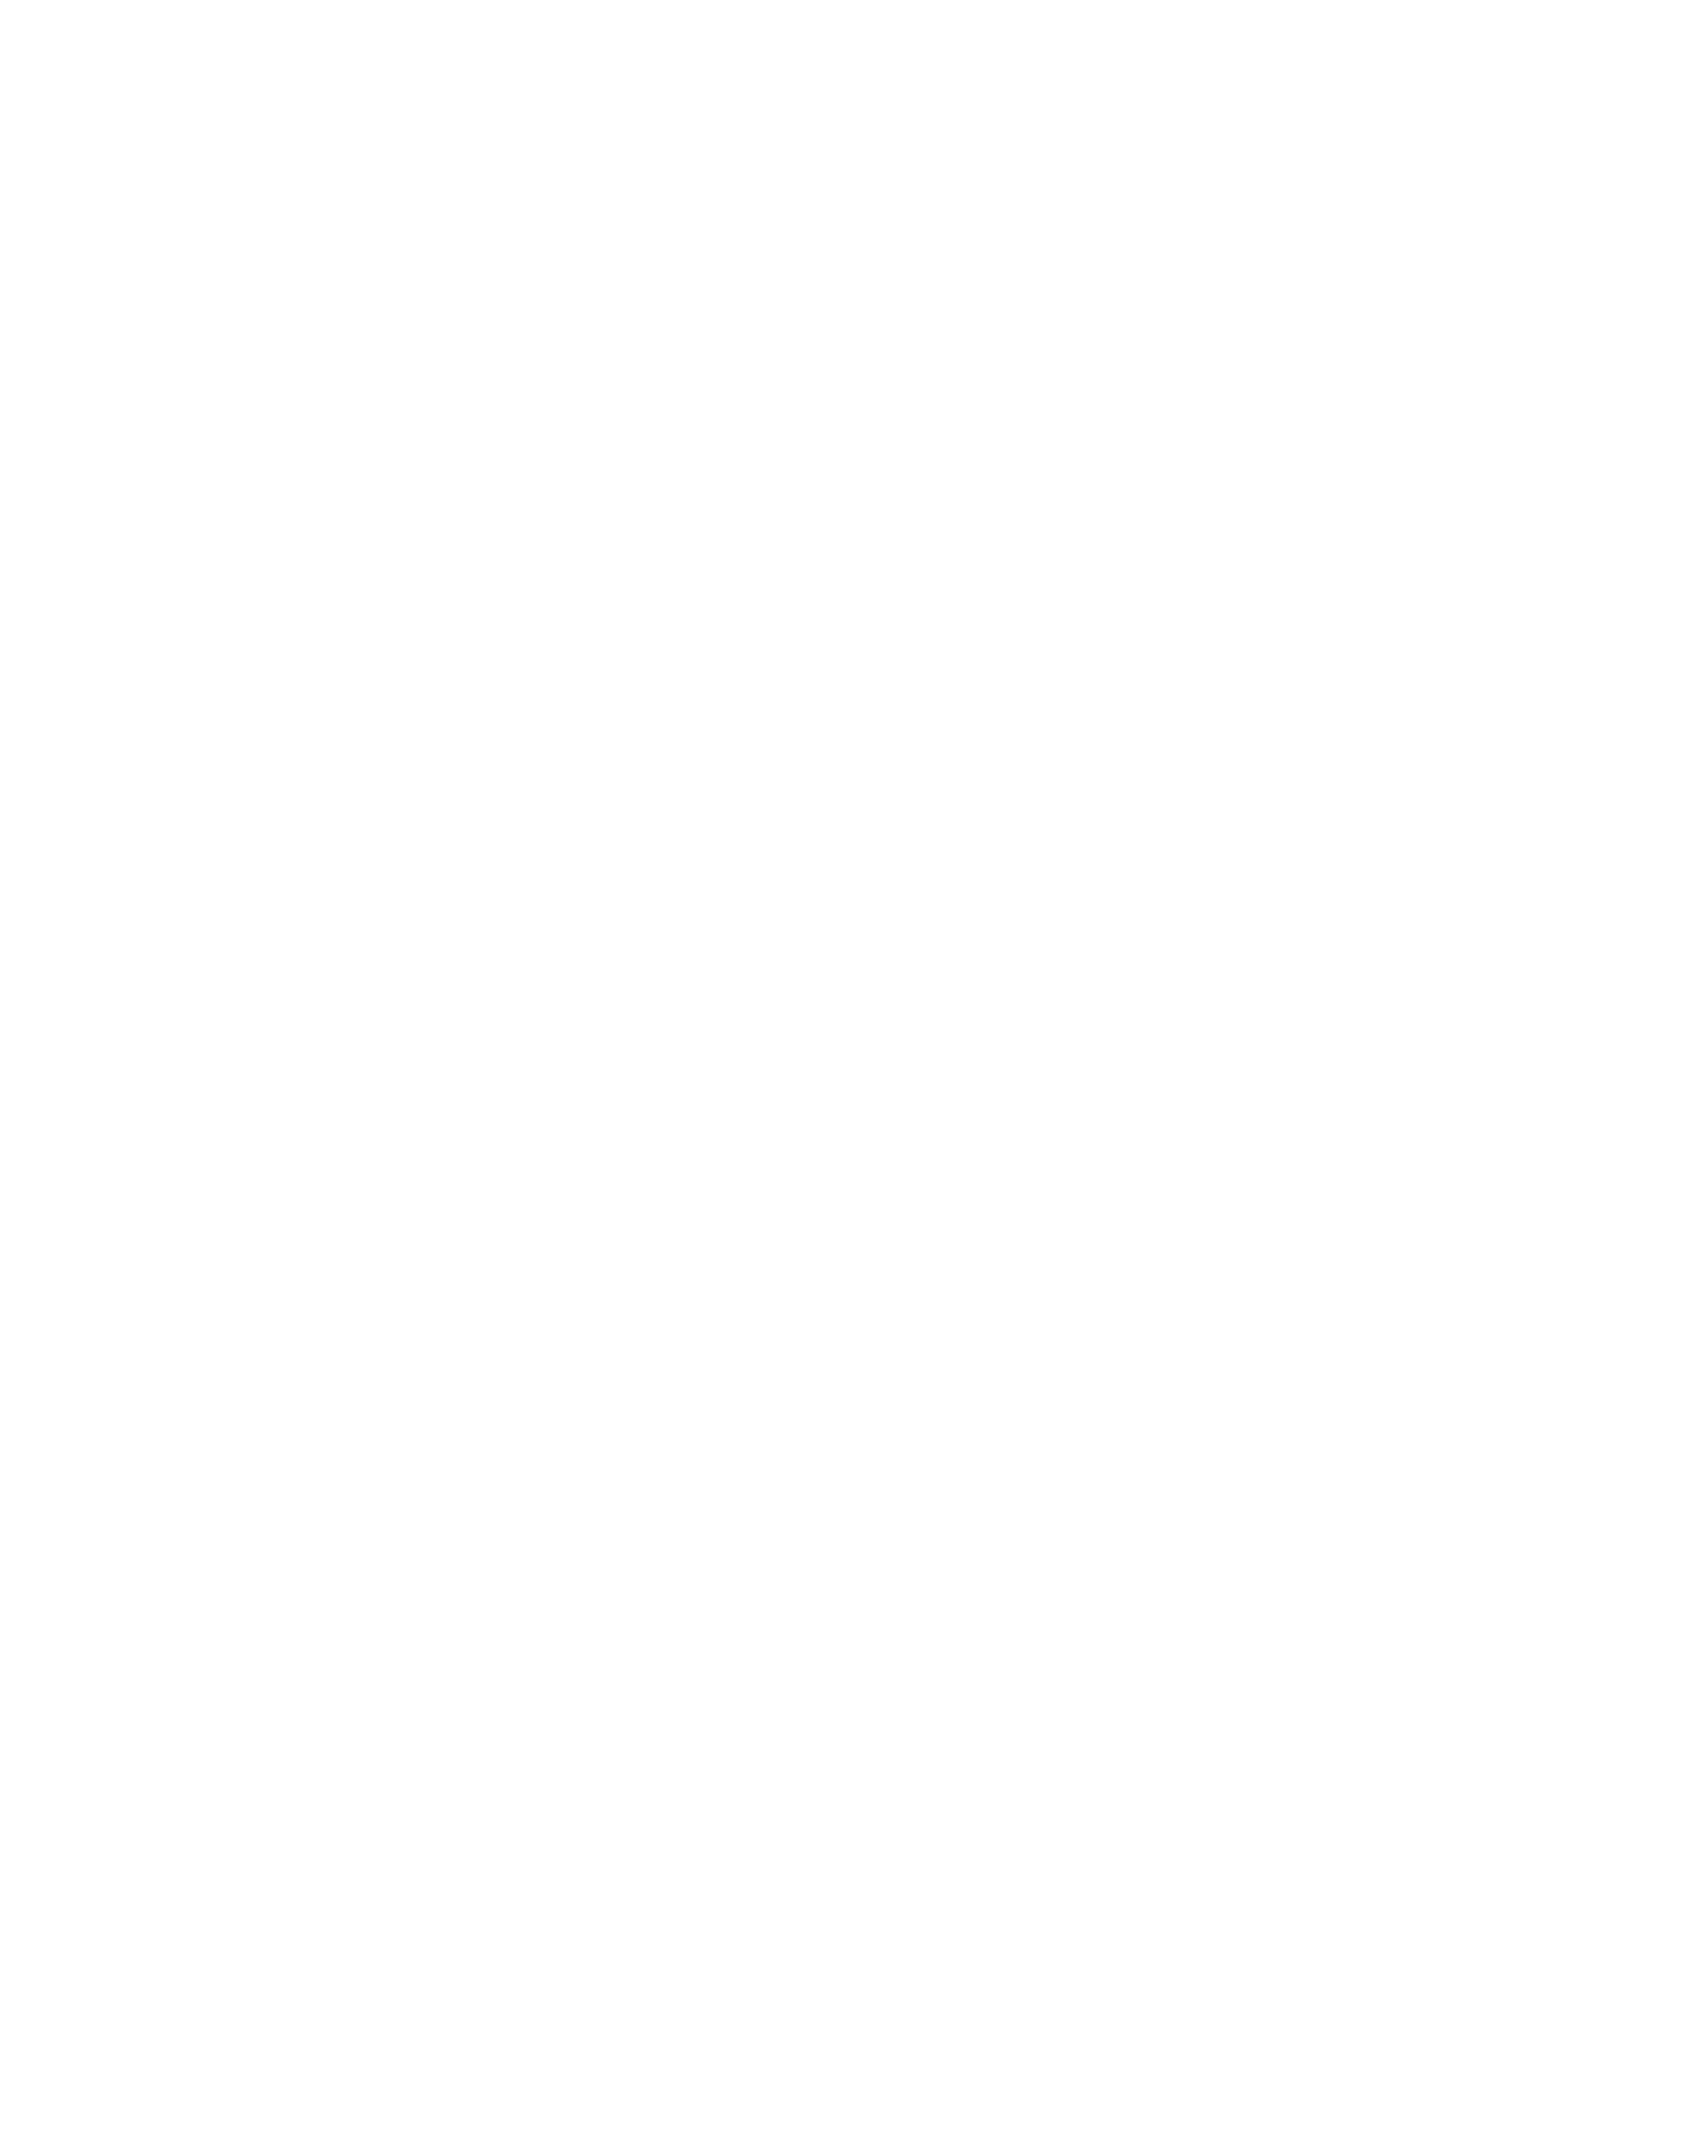 IU Logo - Indiana University